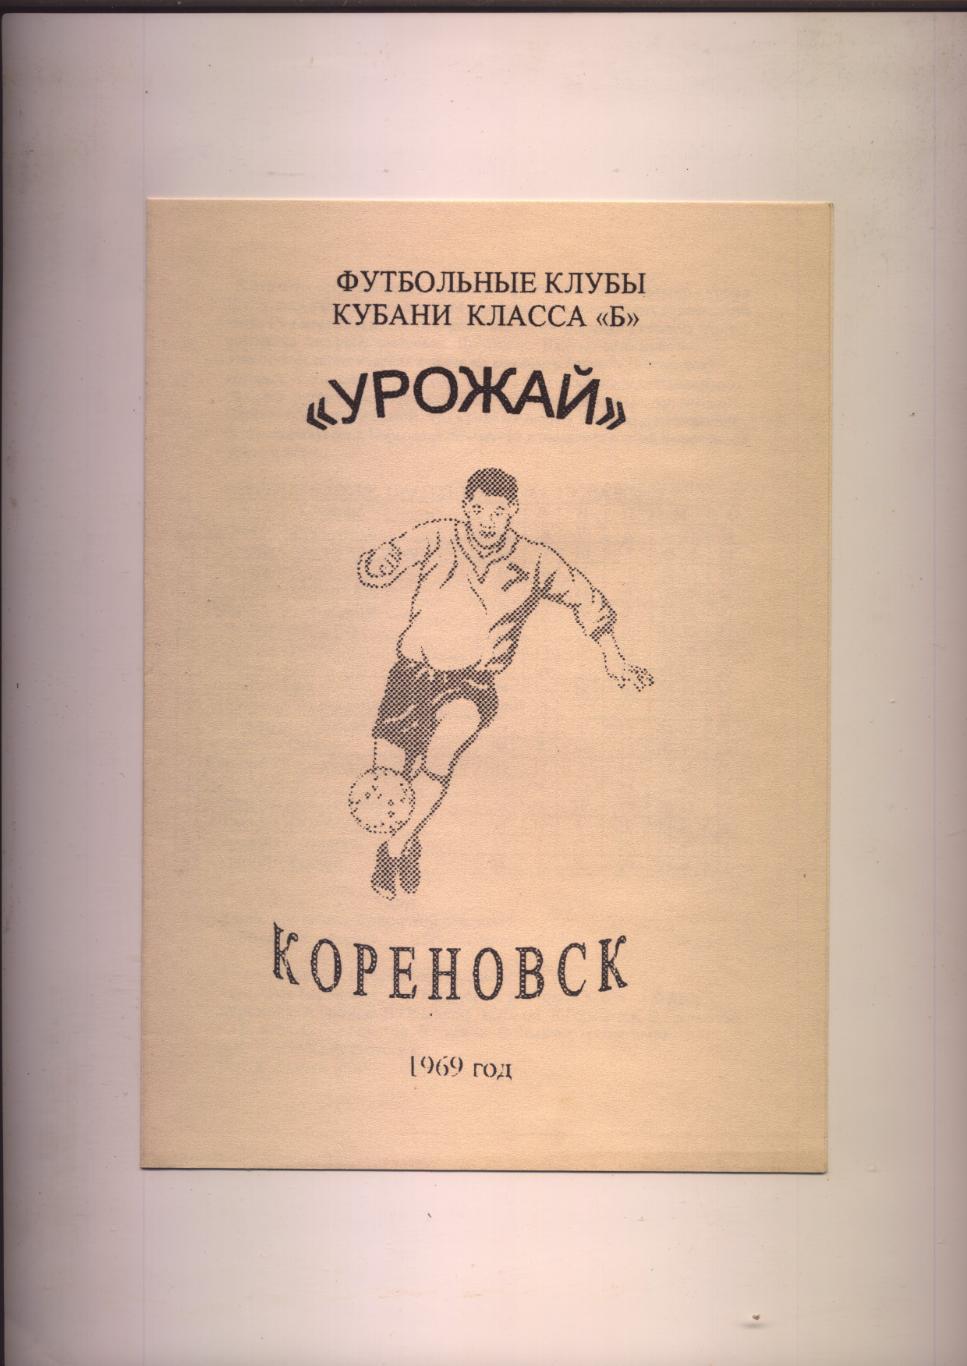 Футбольные клубы Кубани класса Б. Урожай Кореновск 1969 год.